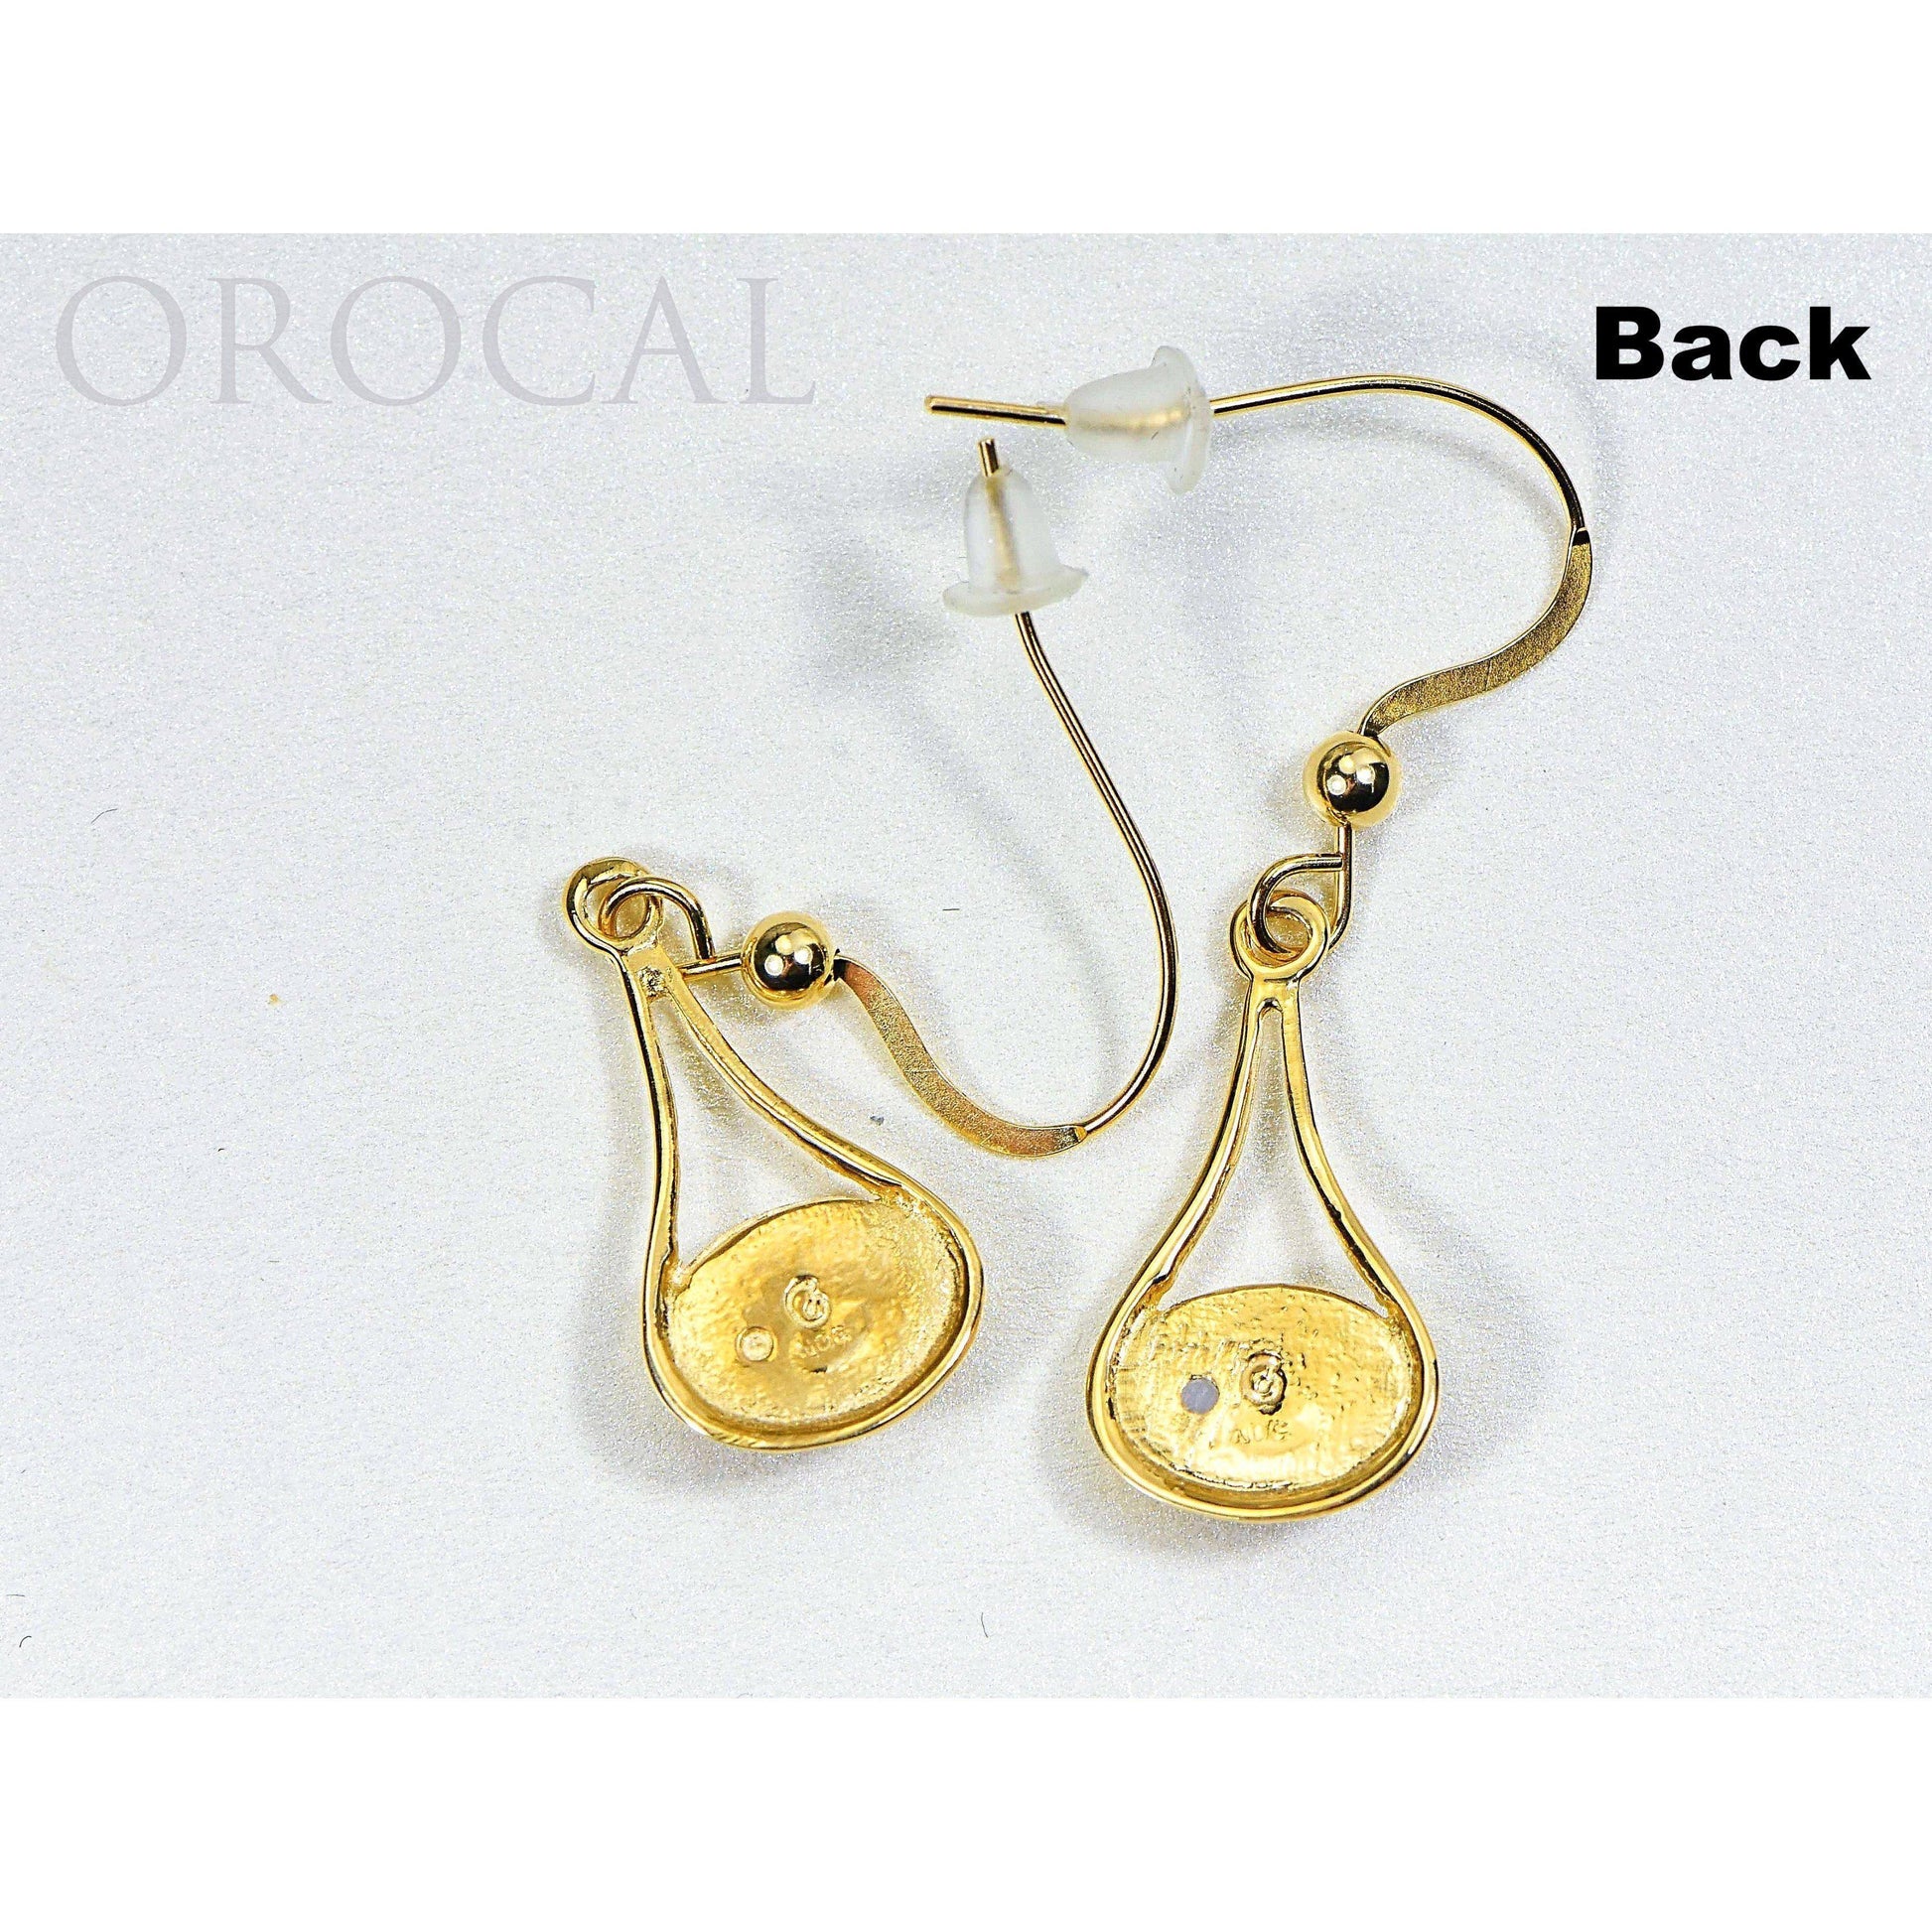 Gold Quartz Earrings Dangling - EN871Q/WD-Destination Gold Detectors